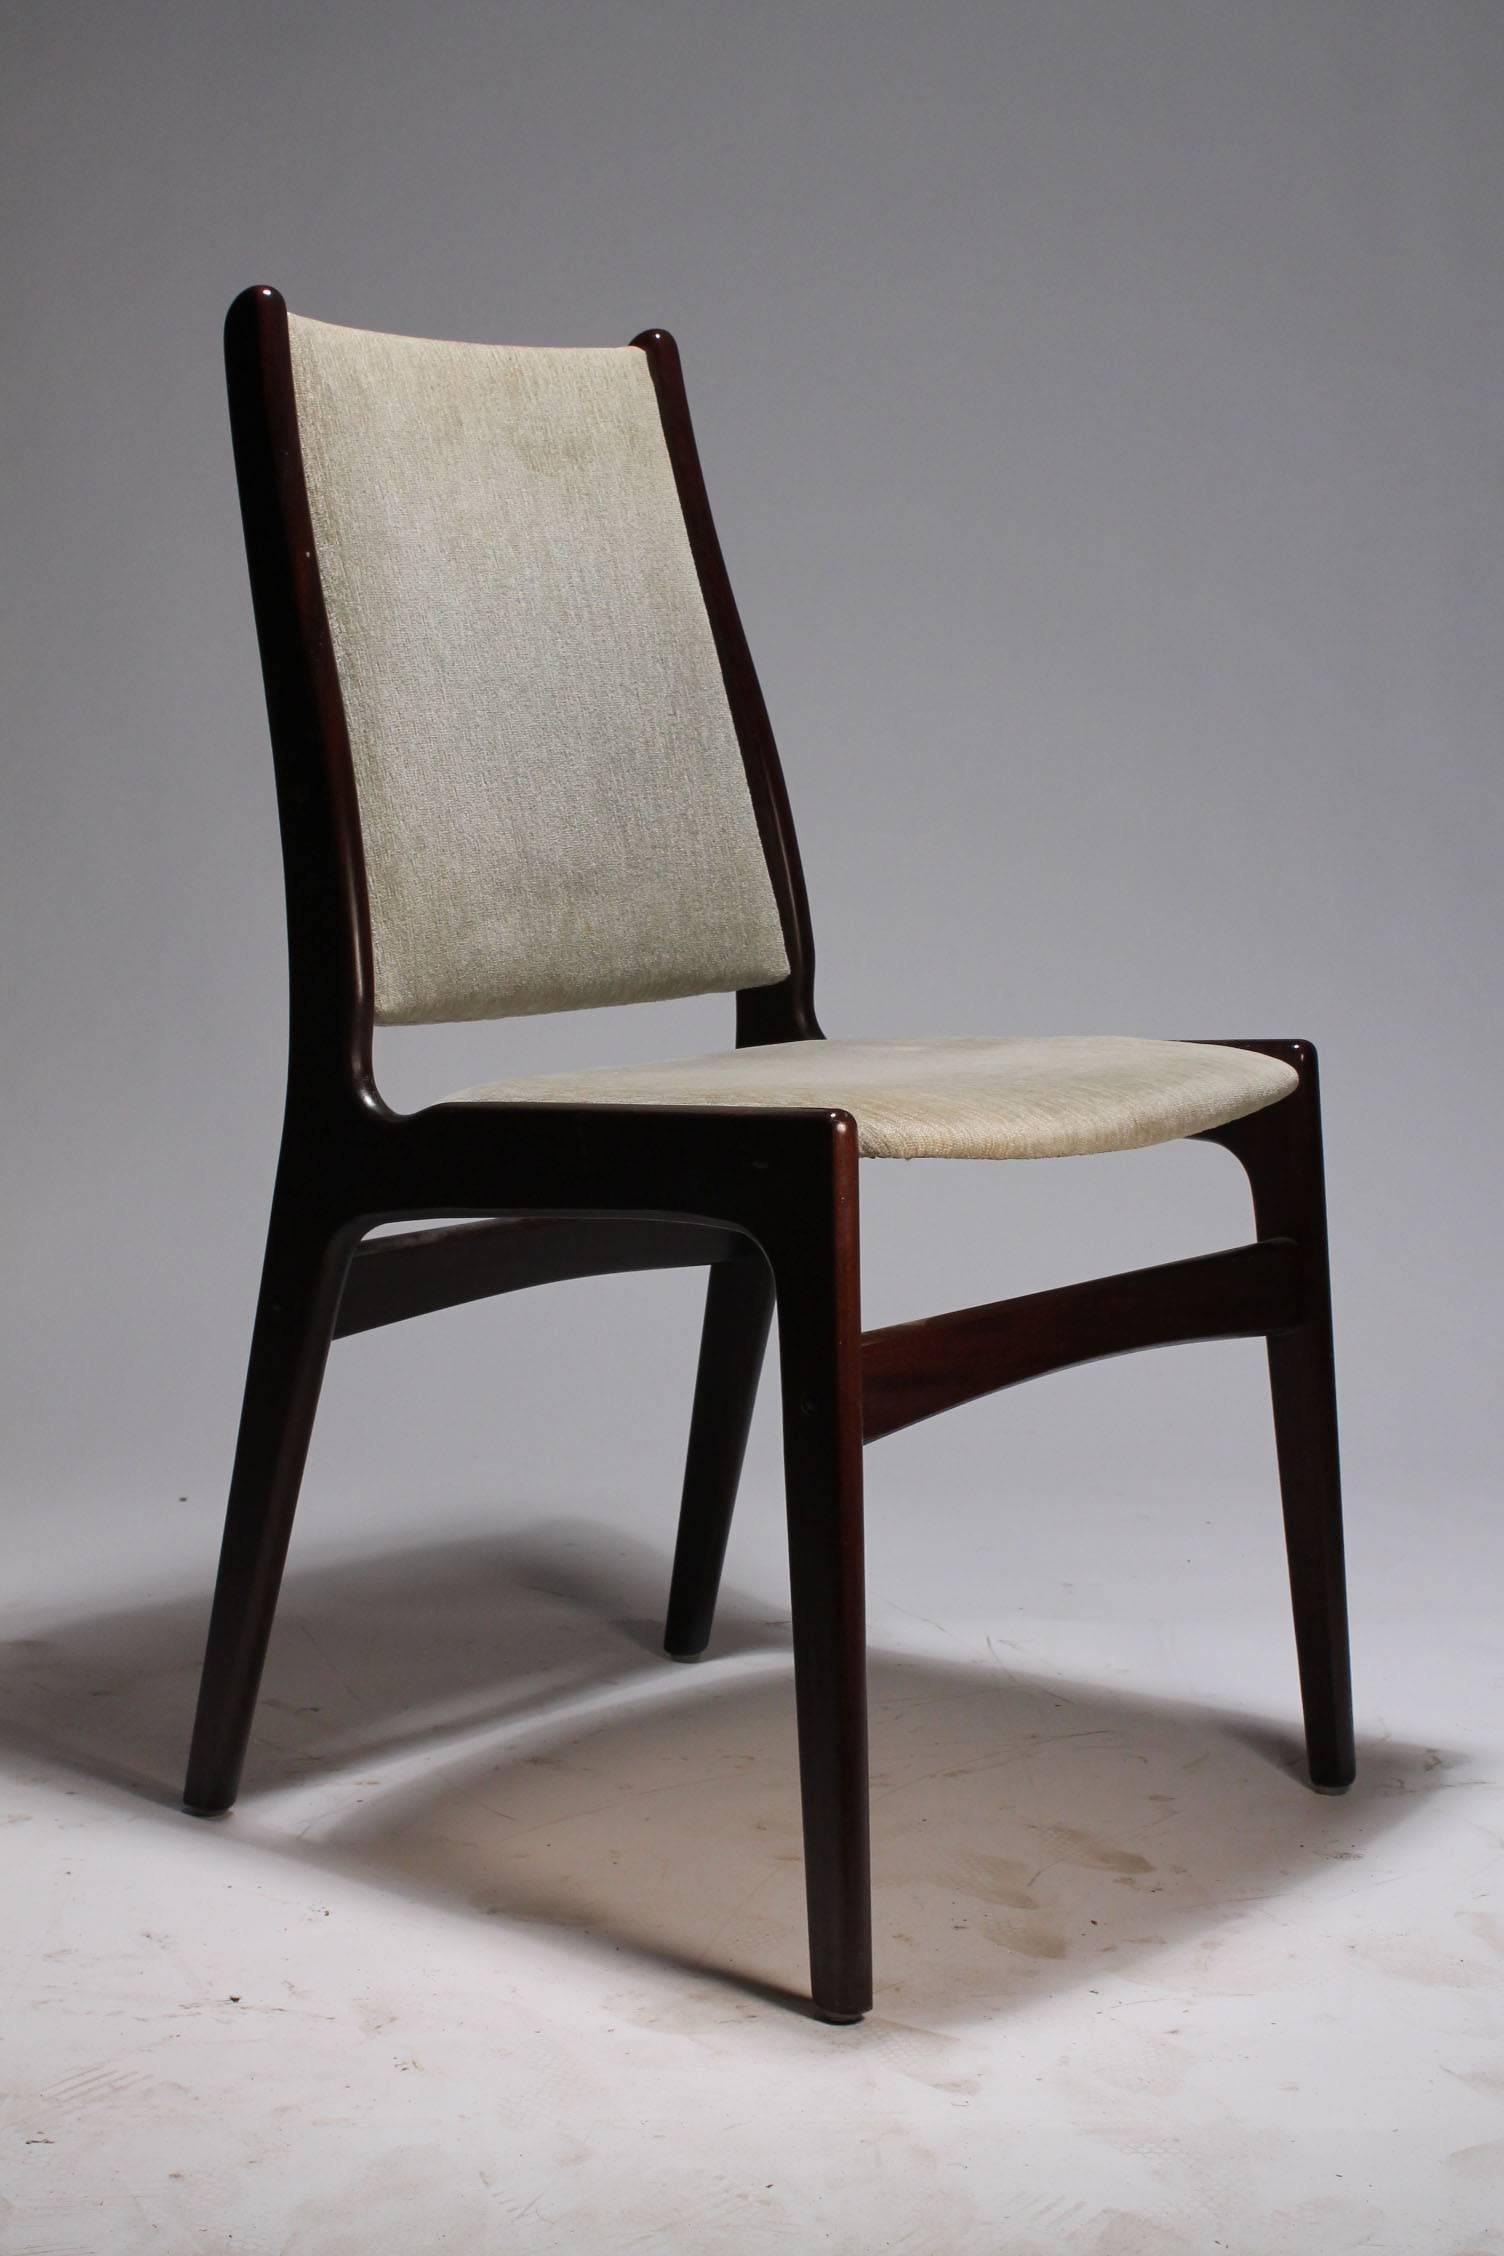 Johannes Andersen design for Anderstrup Mobelfabrik Uldum Mid Century Danish Dining Chairs.

